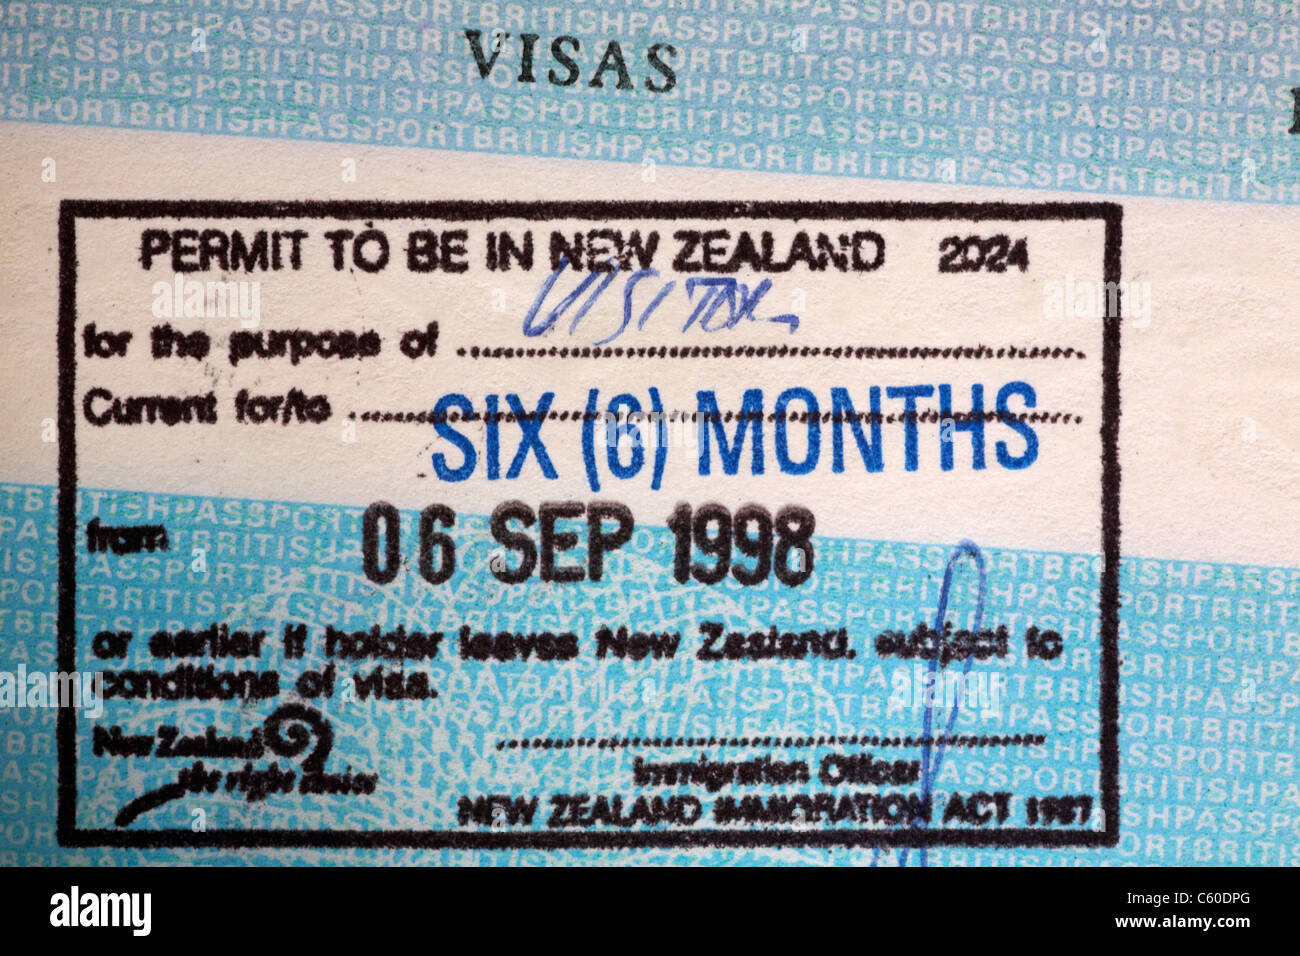 New Zealand visa stamp in British passport Stock Photo